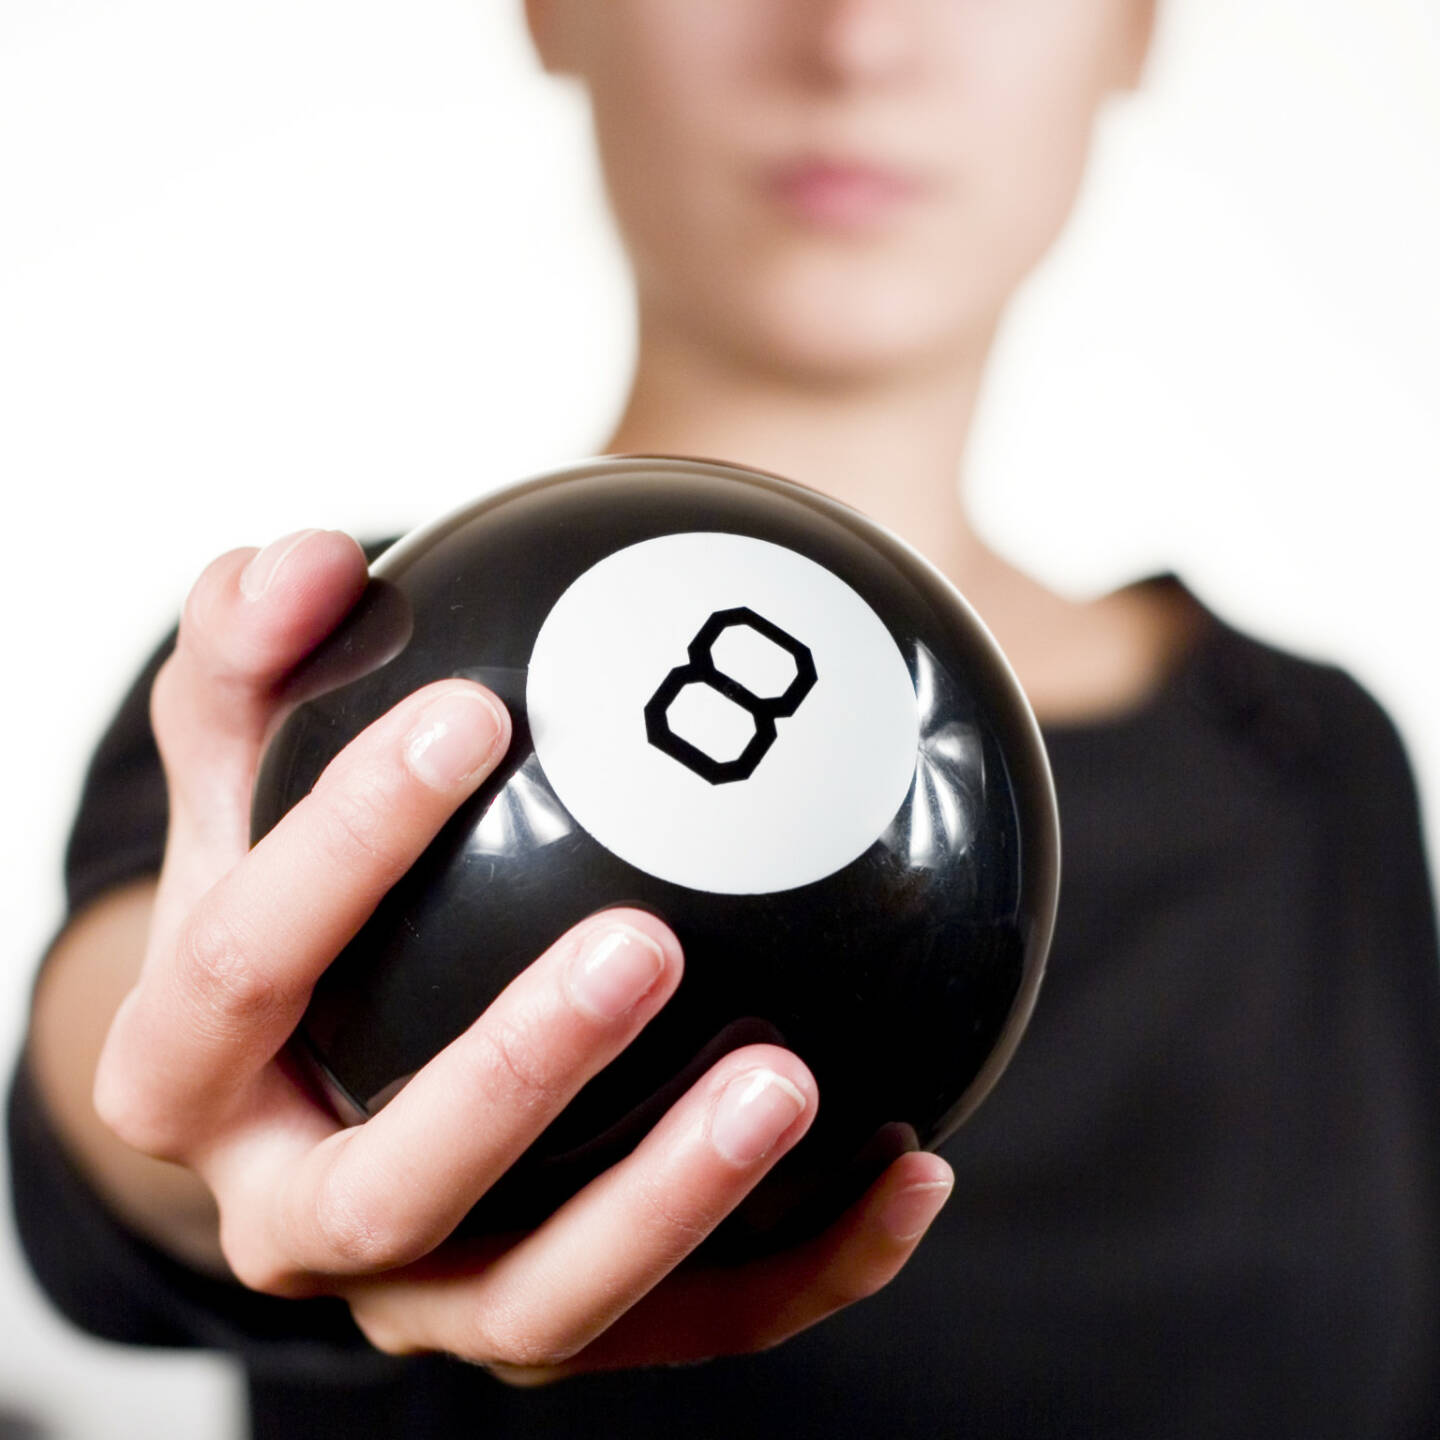 acht - 8, Billard - https://de.depositphotos.com/3918231/stock-photo-woman-holding-black-8-ball.html